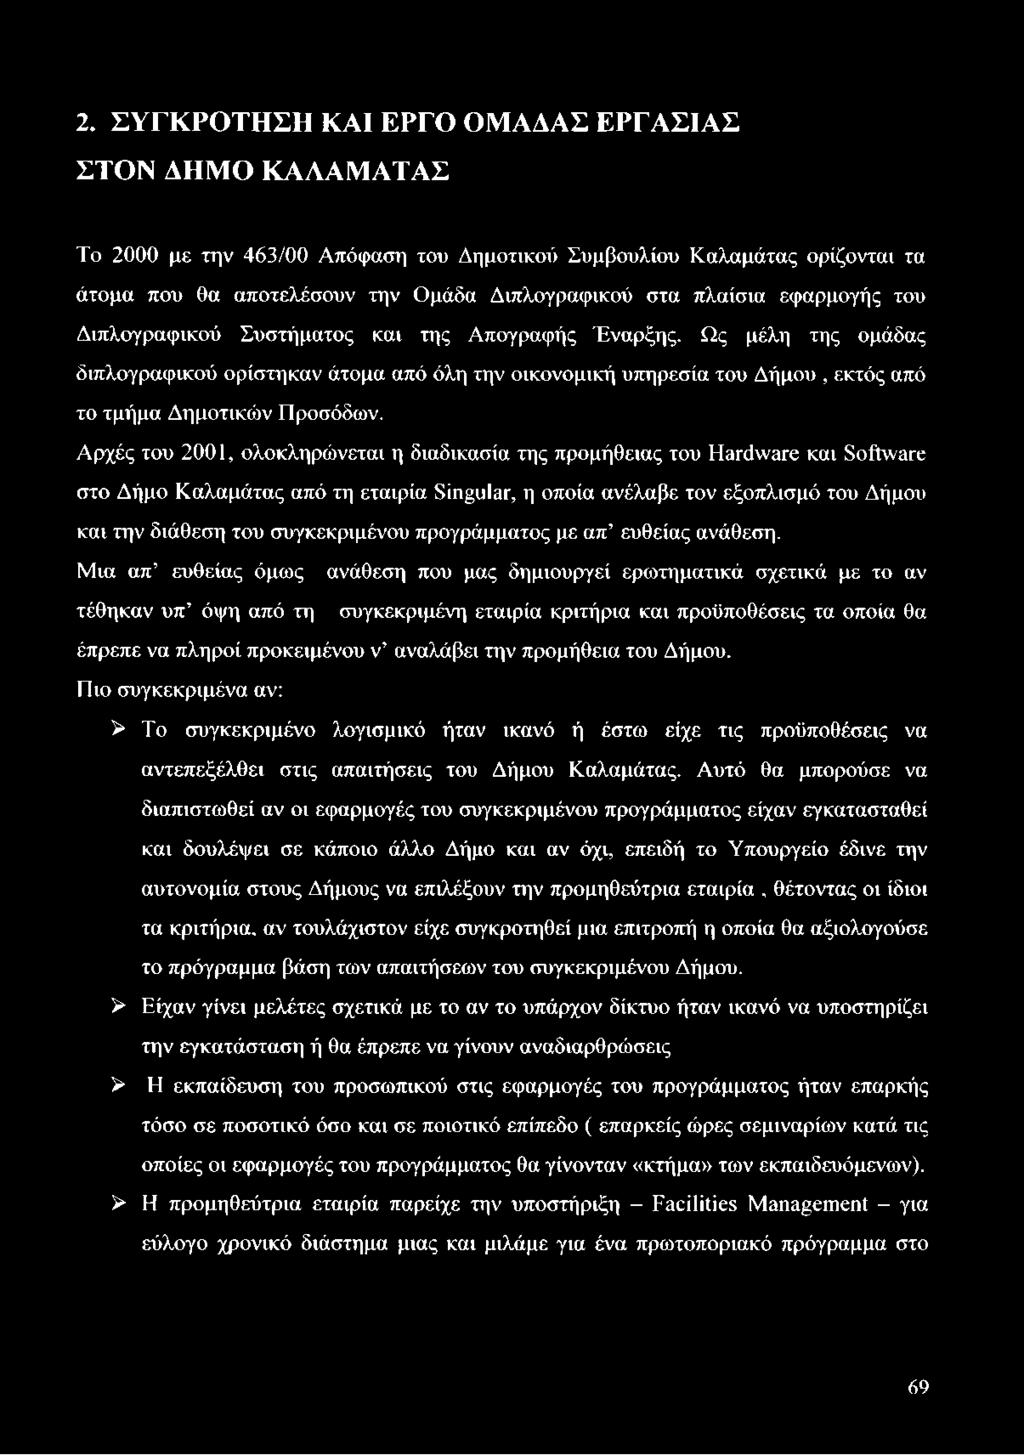 Αρχές του 2001, ολοκληρώνεται η διαδικασία της προμήθειας του Hardware και Software στο Δήμο Καλαμάτας από τη εταιρία Singular, η οποία ανέλαβε τον εξοπλισμό του Δήμου και την διάθεση του